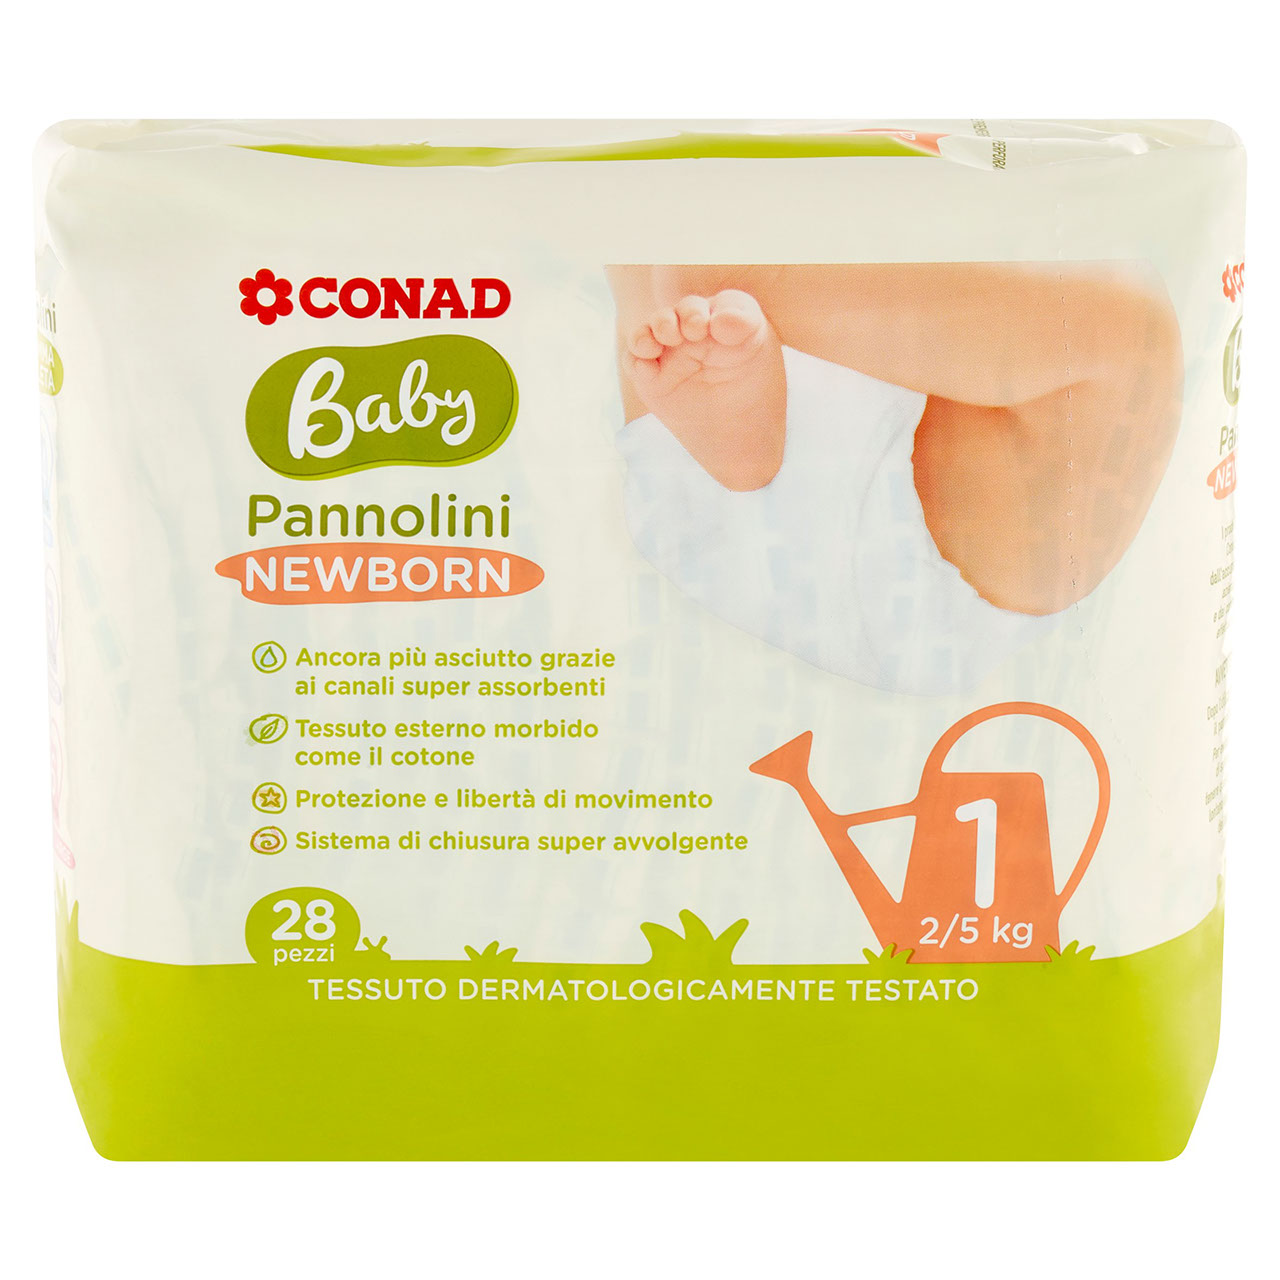 Baby Pannolini Newborn 1 2/5 kg 28 pezzi Conad